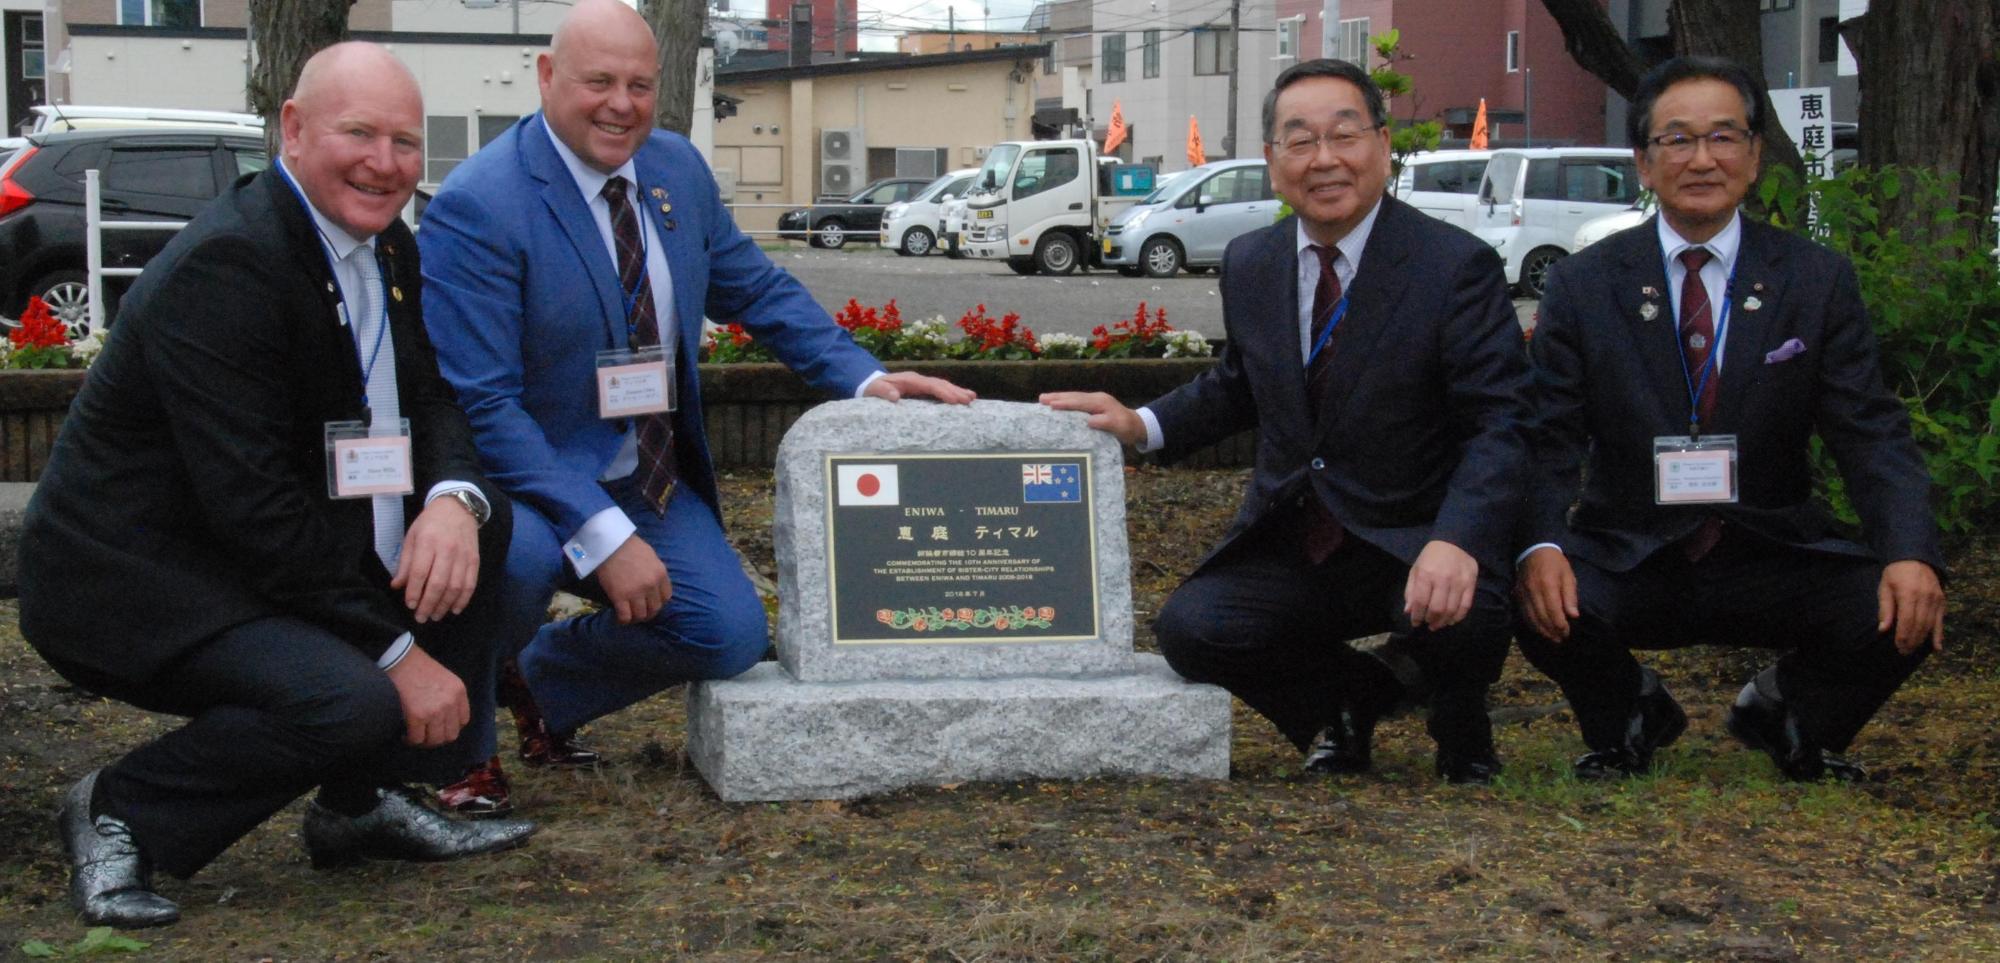 恵庭市役所にてデイモン・オディ市長、スティーヴ・ウィリス市議と恵庭市長と笹松京次郎市議会議長が記念石碑と並んで撮影した記念写真